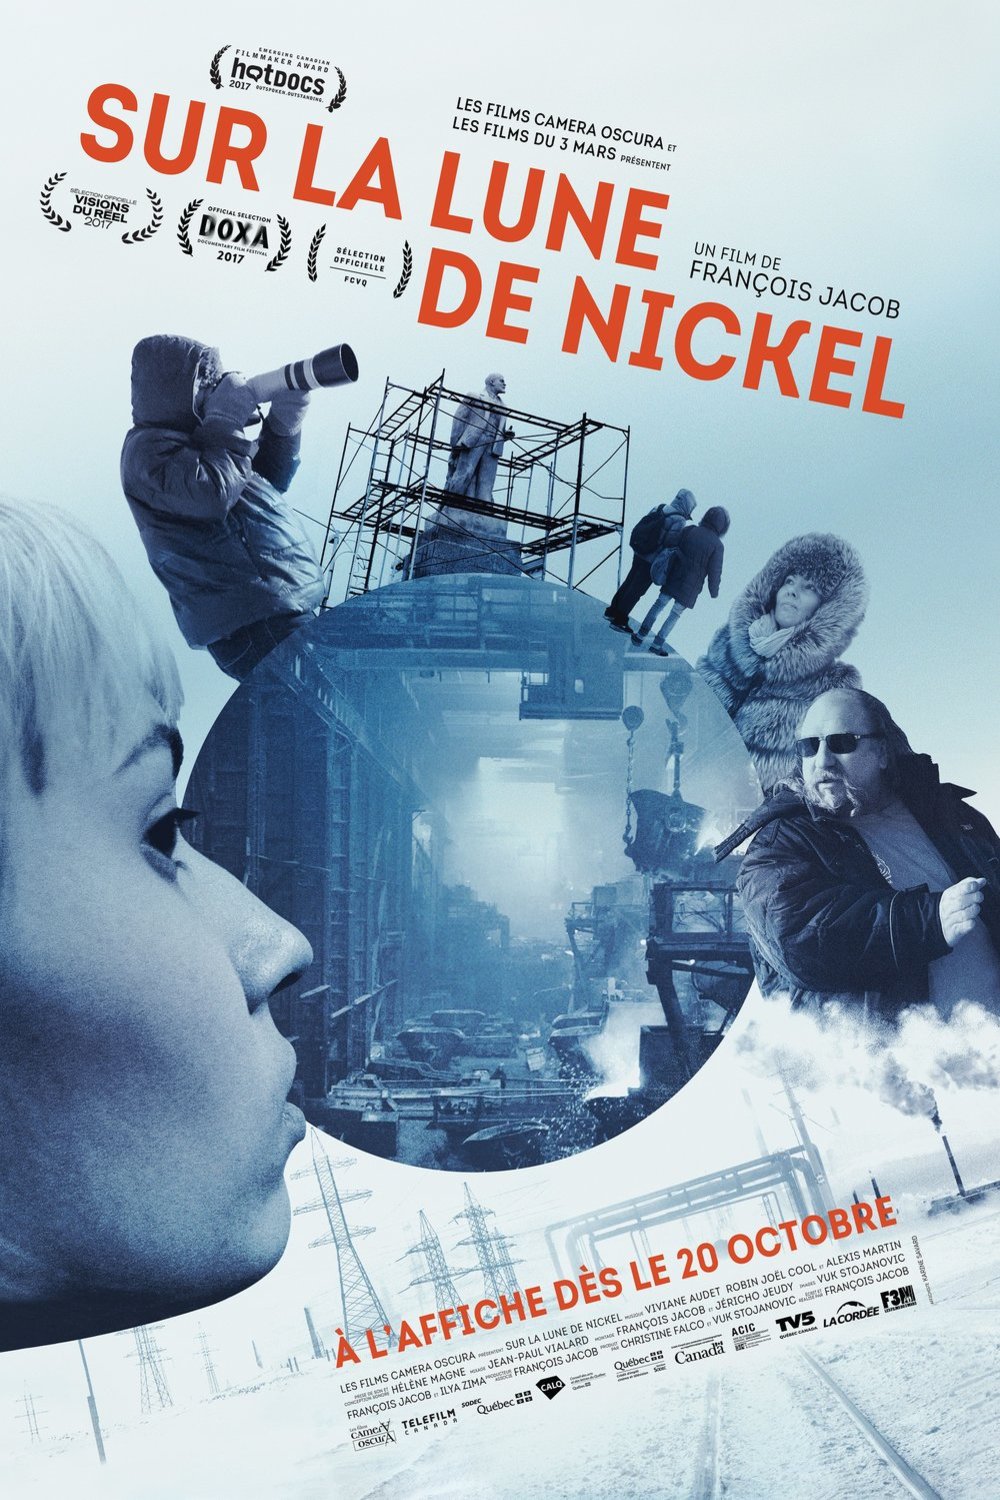 Poster of the movie Sur la lune de nickel